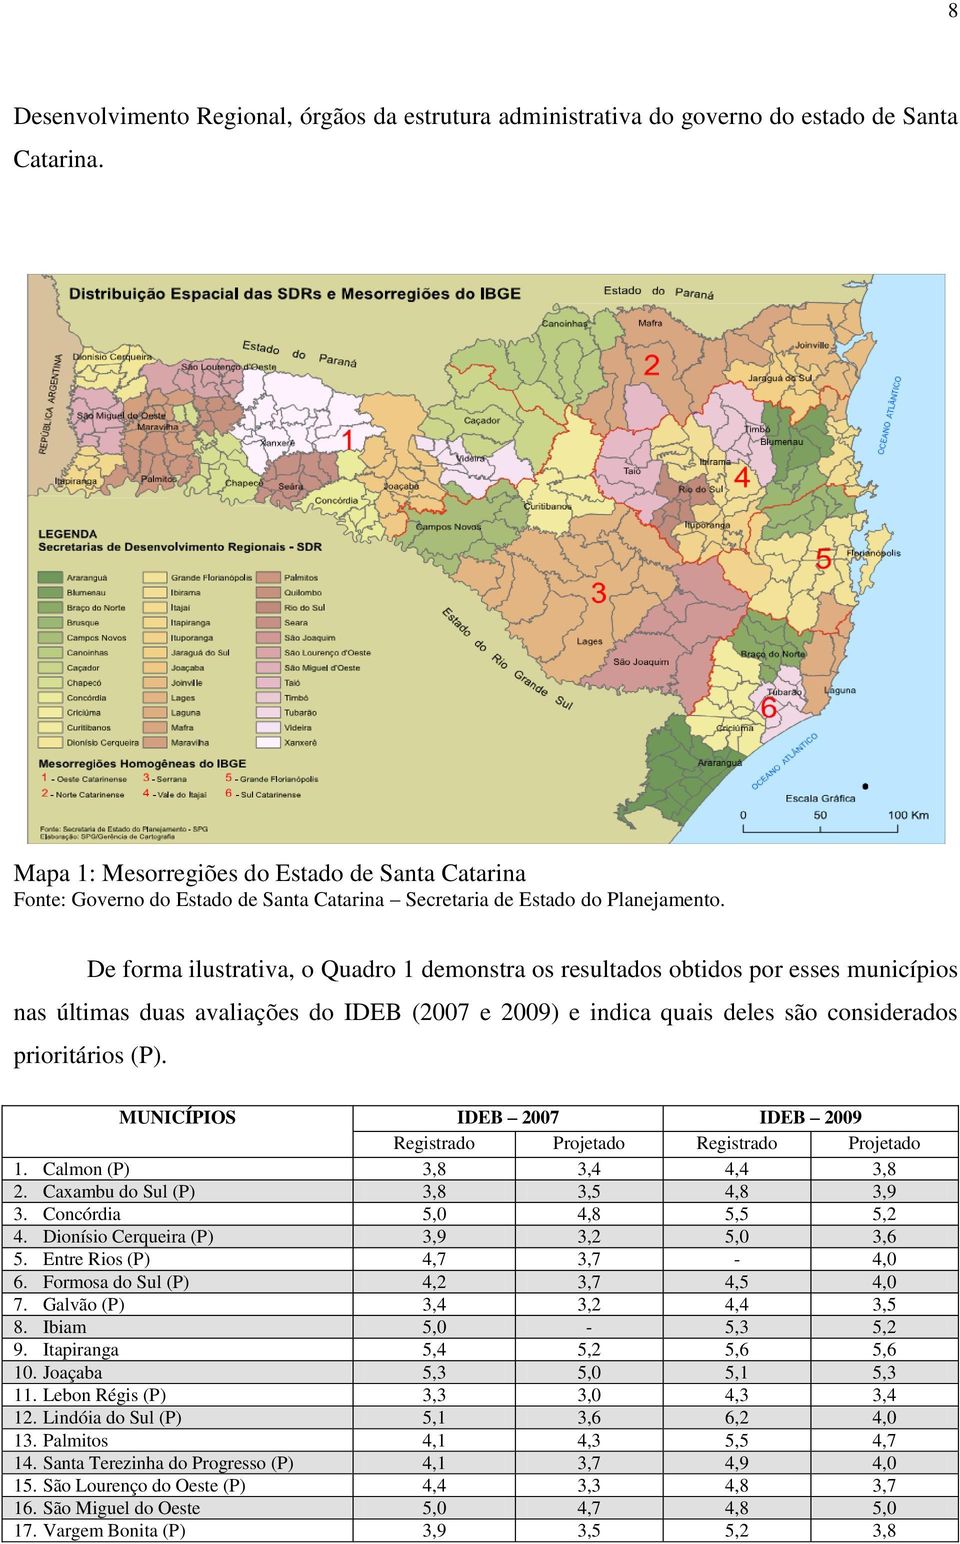 De forma ilustrativa, o Quadro 1 demonstra os resultados obtidos por esses municípios nas últimas duas avaliações do IDEB (2007 e 2009) e indica quais deles são considerados prioritários (P).